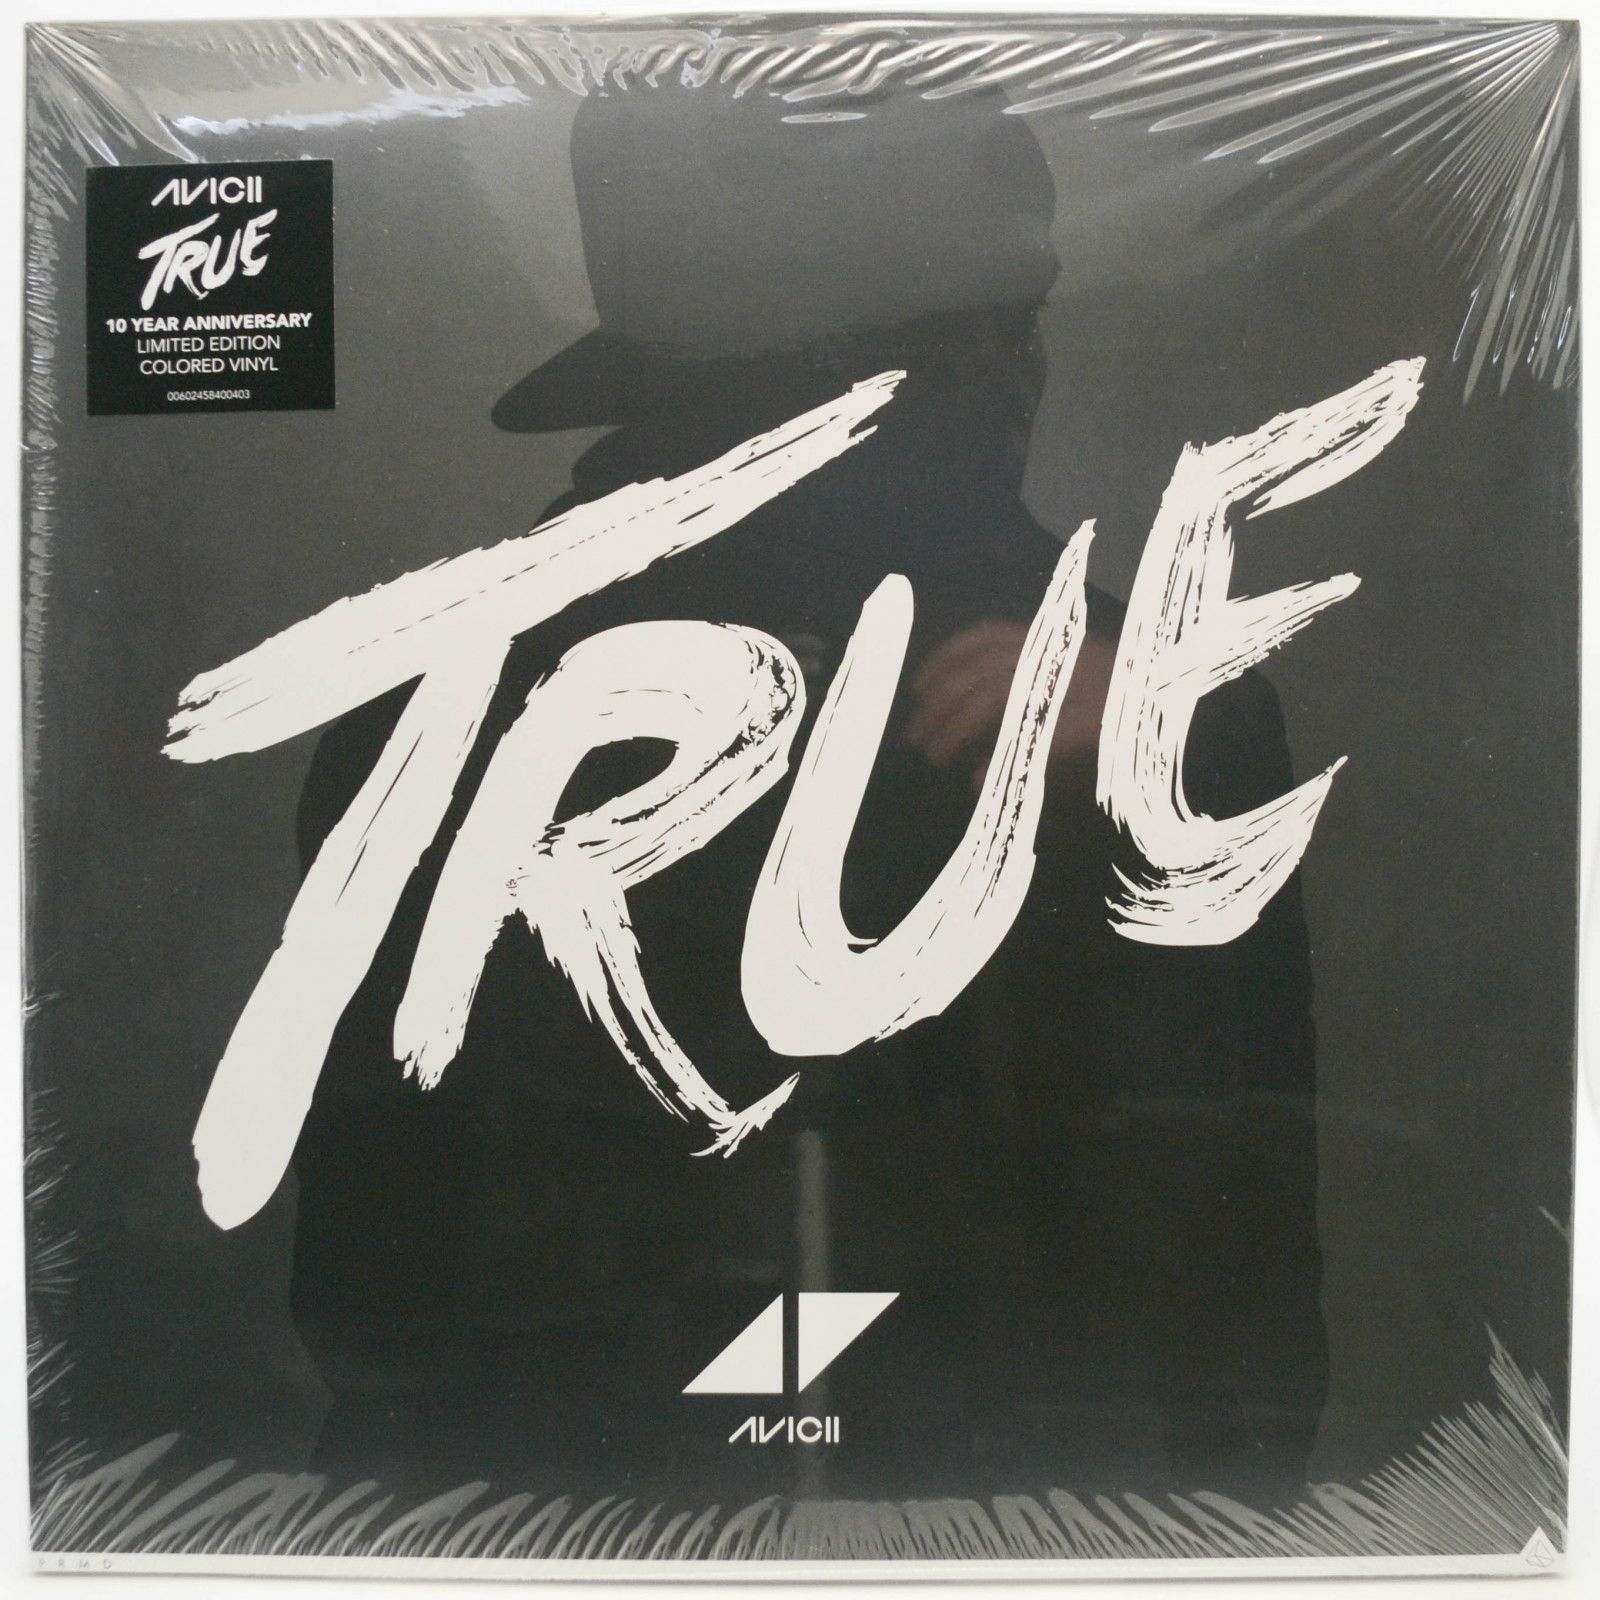 Avicii — True, 2013